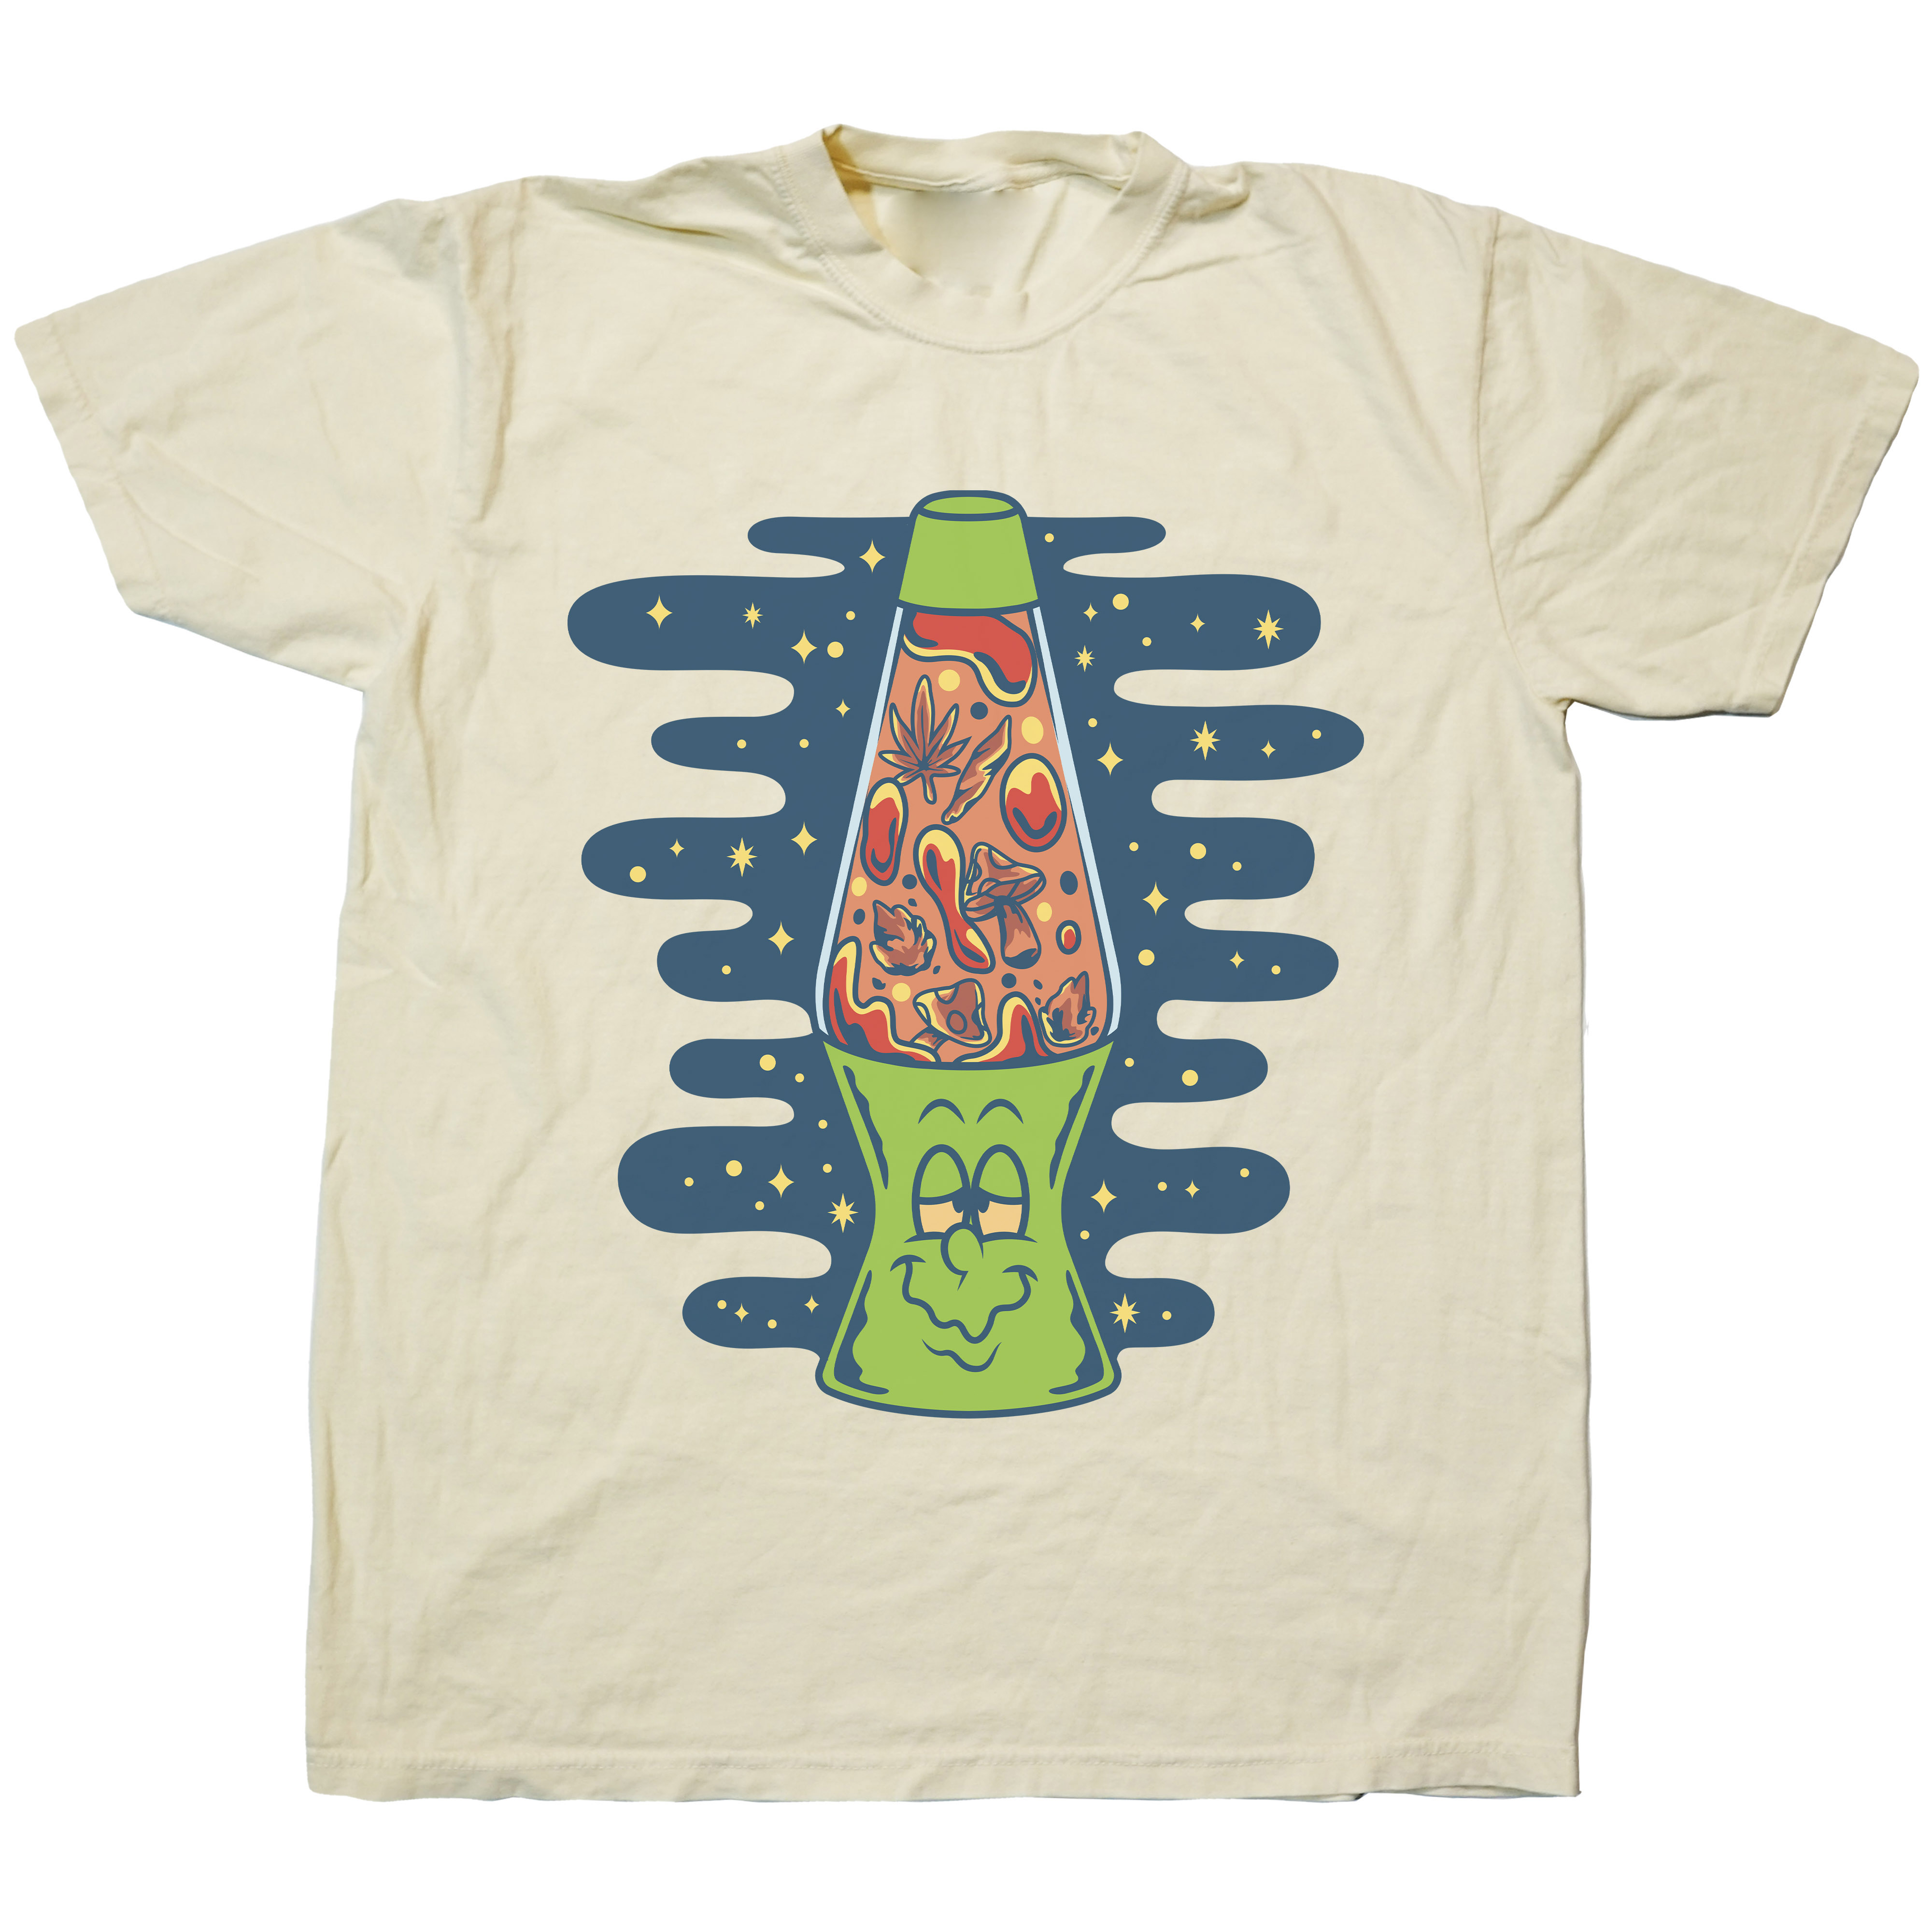 420 Kush Lamp Classic Graphic T-Shirts - Cuztom Threadz